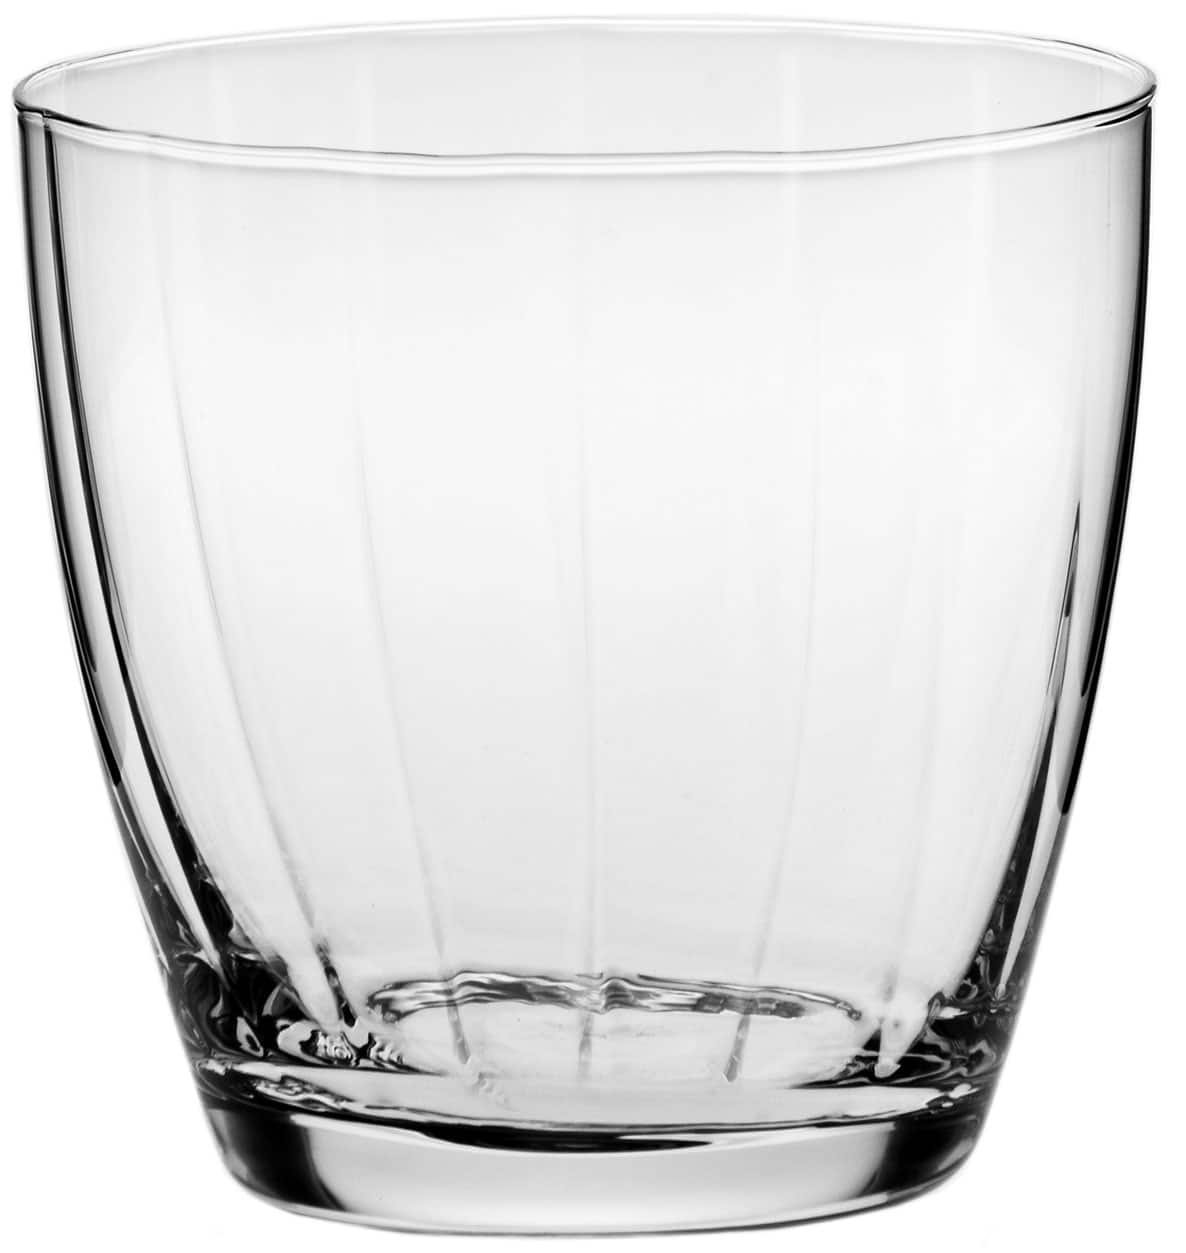 סט 6 כוסות ויסקי 300 מ”ל Krosno Illumination Collection Tumbler